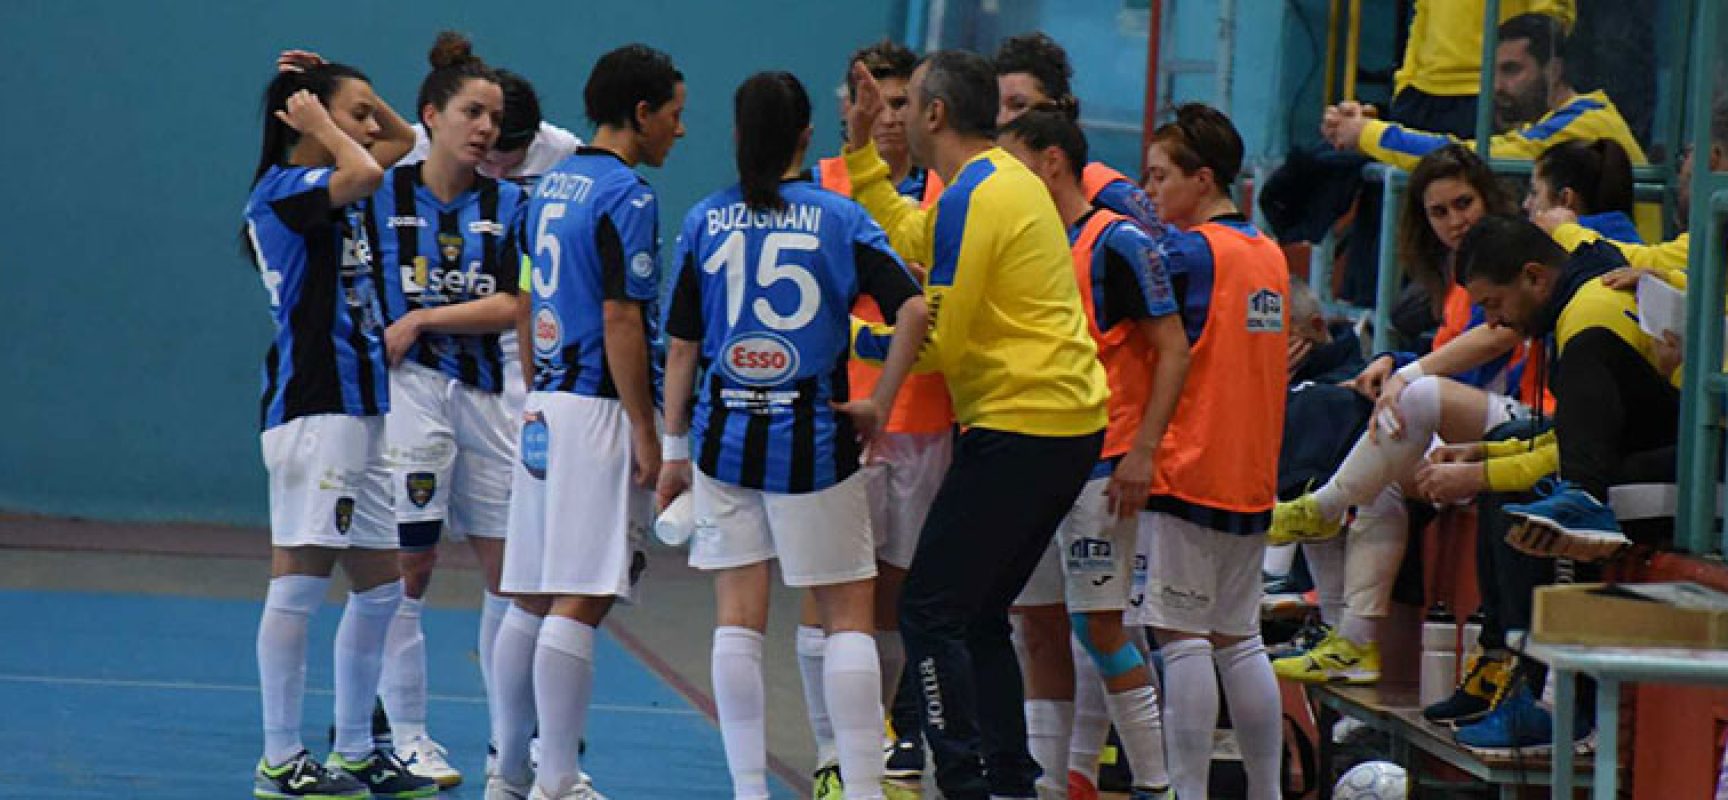 Futsal Florentia vittorioso al PalaDolmen contro il Bisceglie Femminile